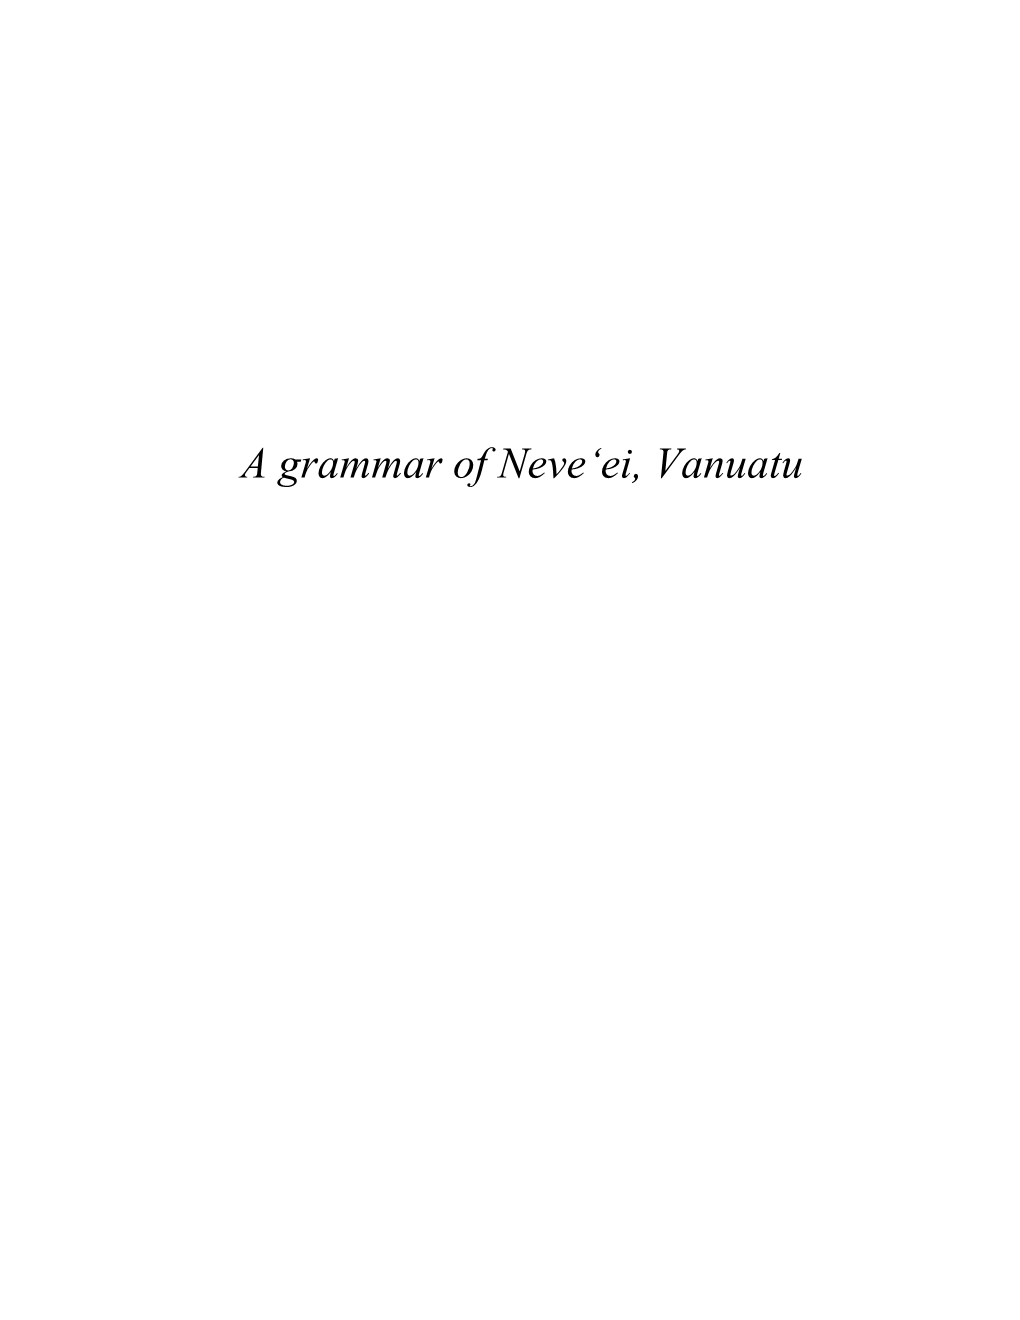 A Grammar of Neve'ei, Vanuatu